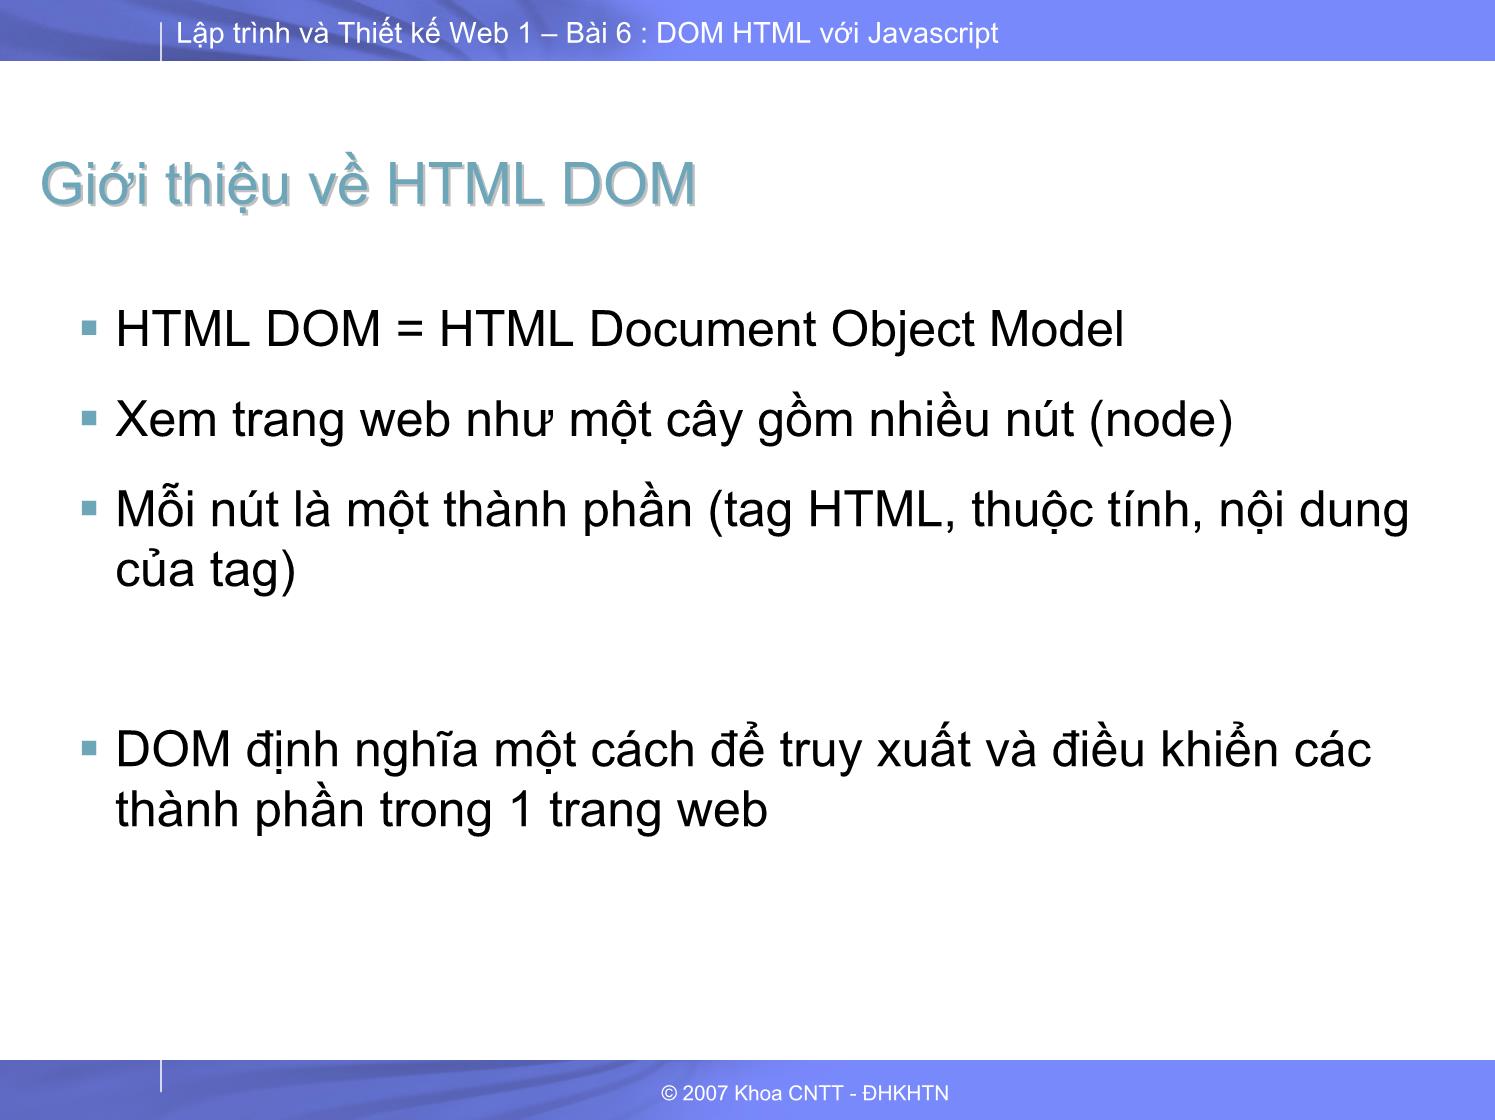 Lập trình và thiết kế Web 1 - Bài 6 - Phần 2/2: HTML DOM với JavaScript trang 4